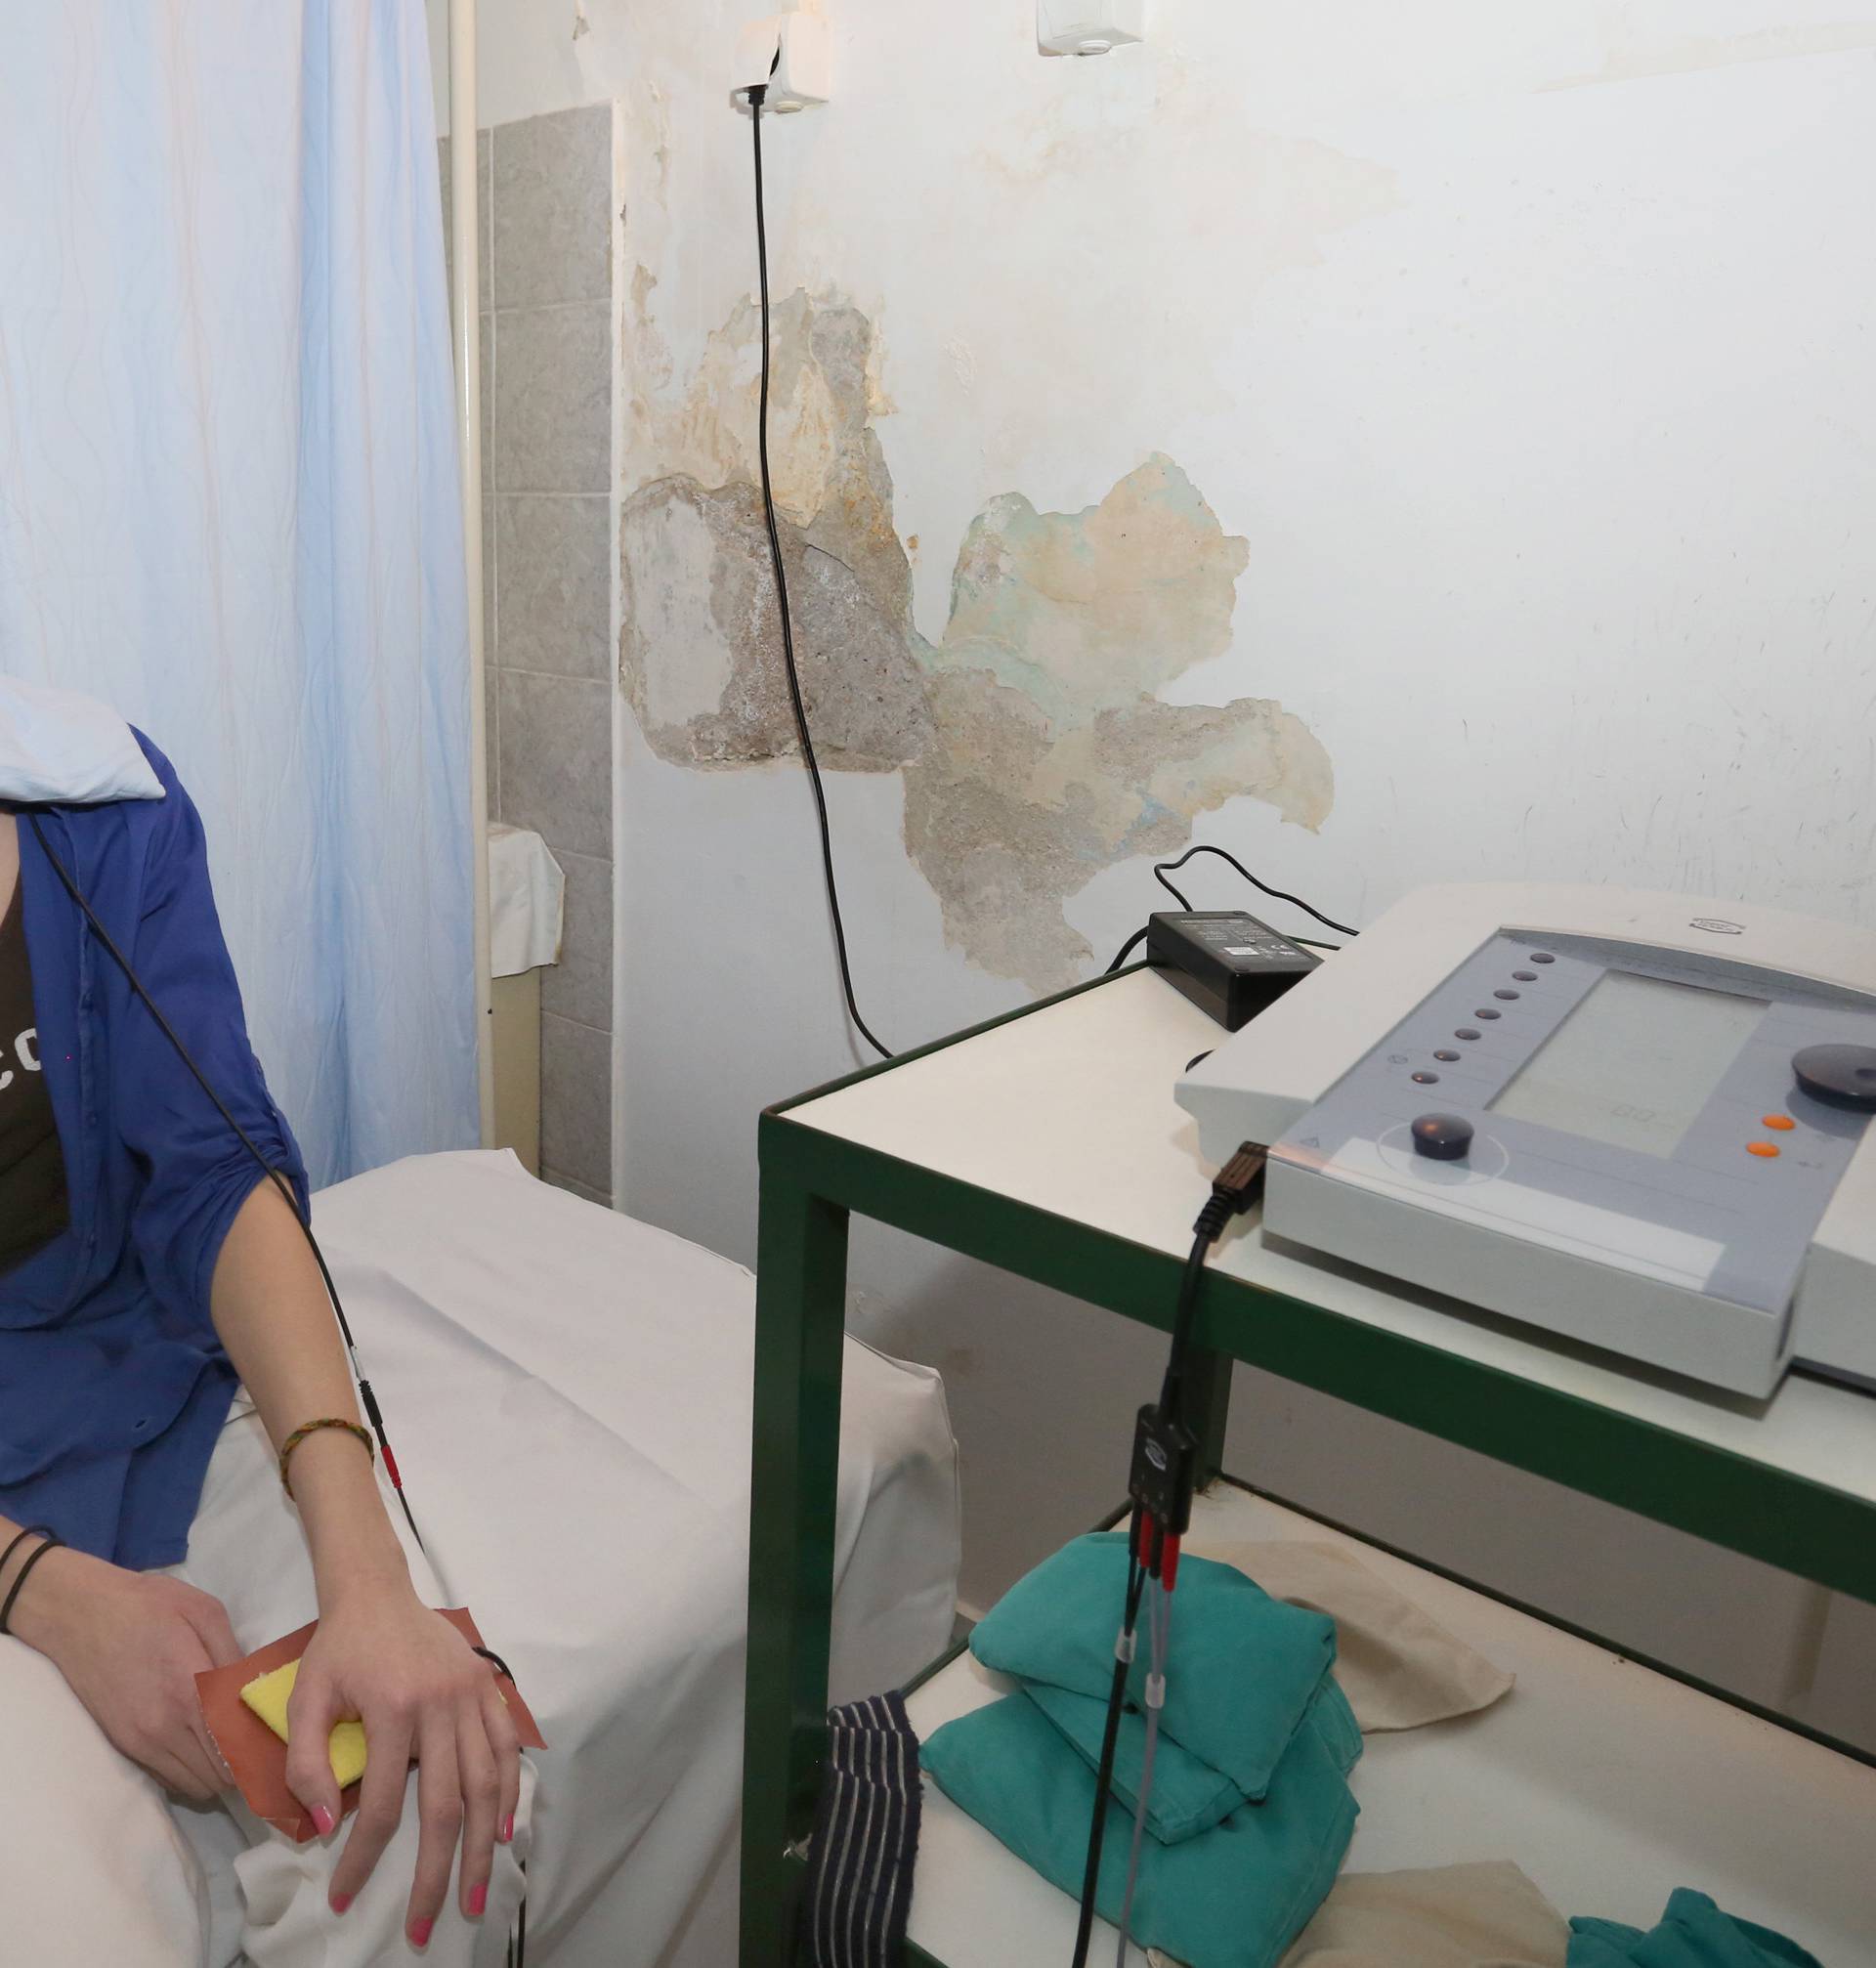 Hrvatske bolnice: Štakori su u čekaonicama, a vlaga u salama